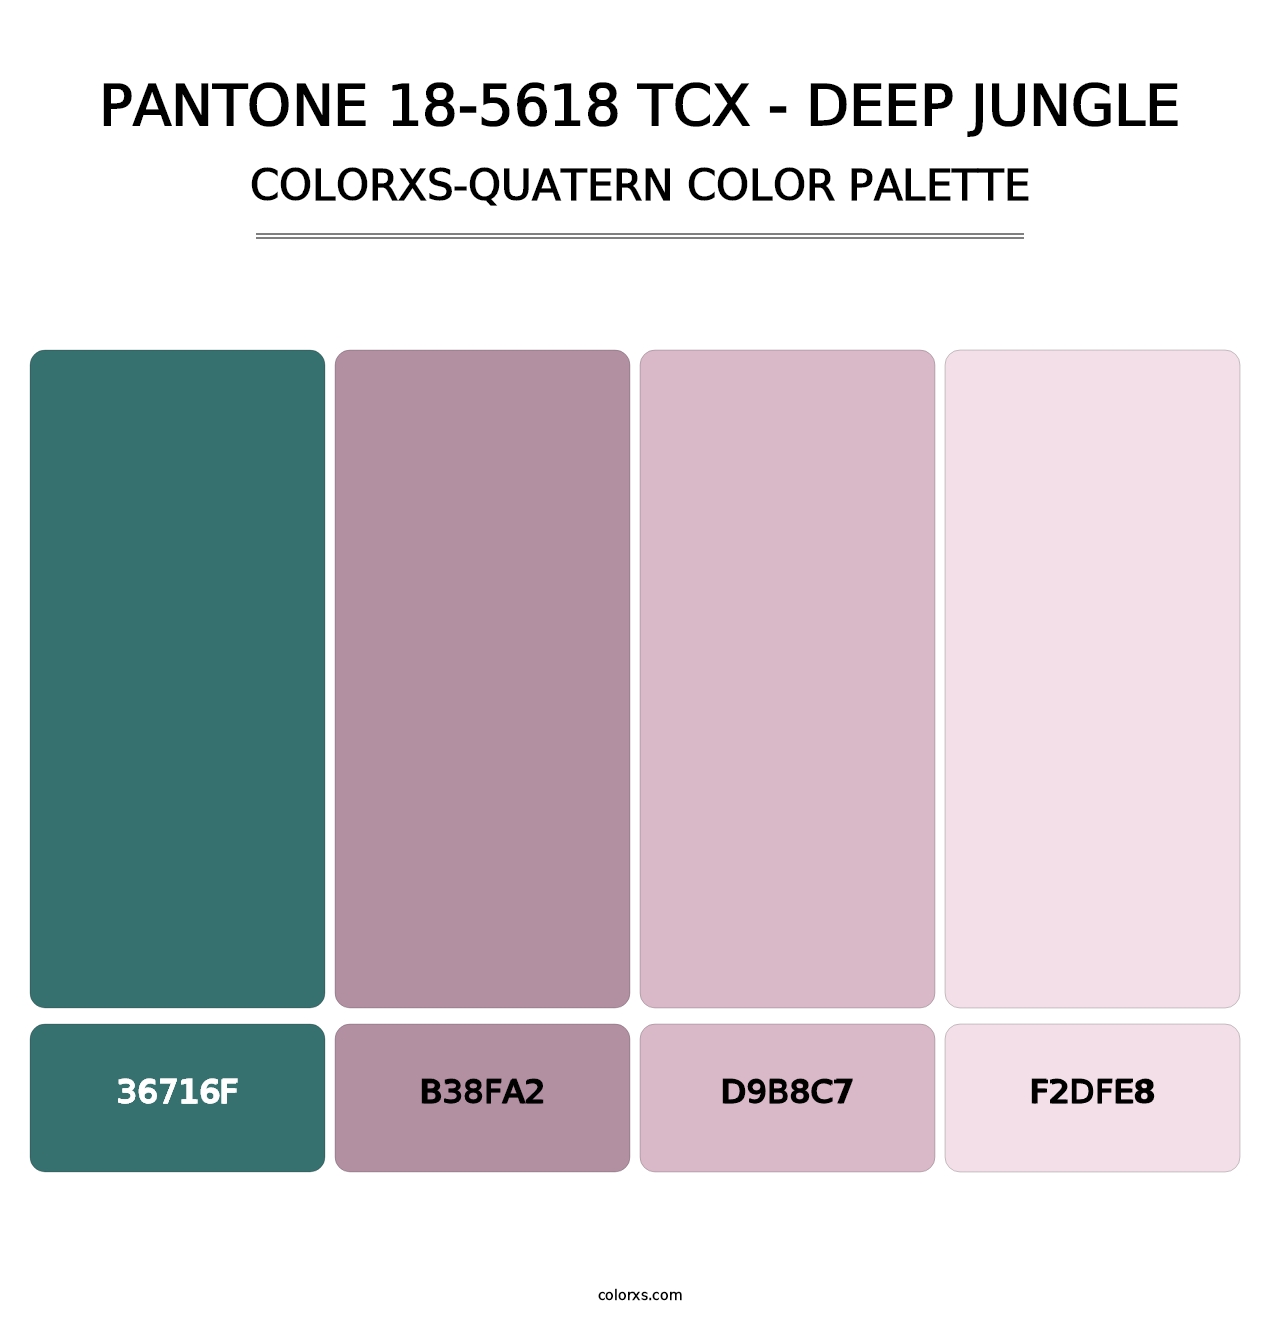 PANTONE 18-5618 TCX - Deep Jungle - Colorxs Quatern Palette